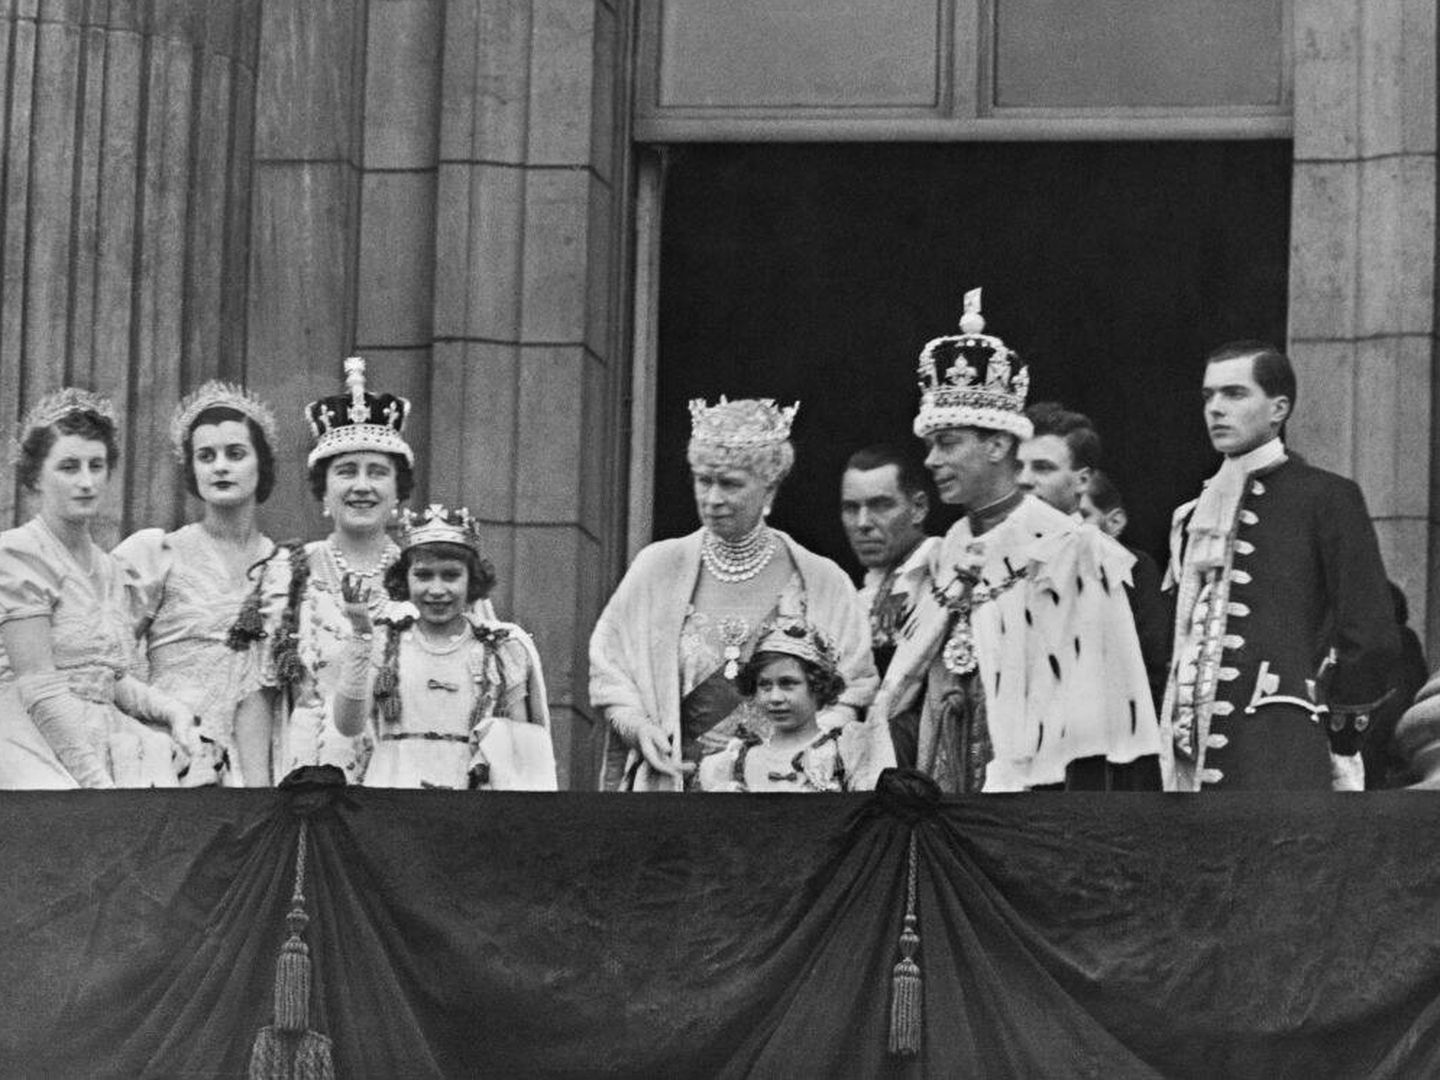  La coronación de Jorge VI en 1937. (Getty)